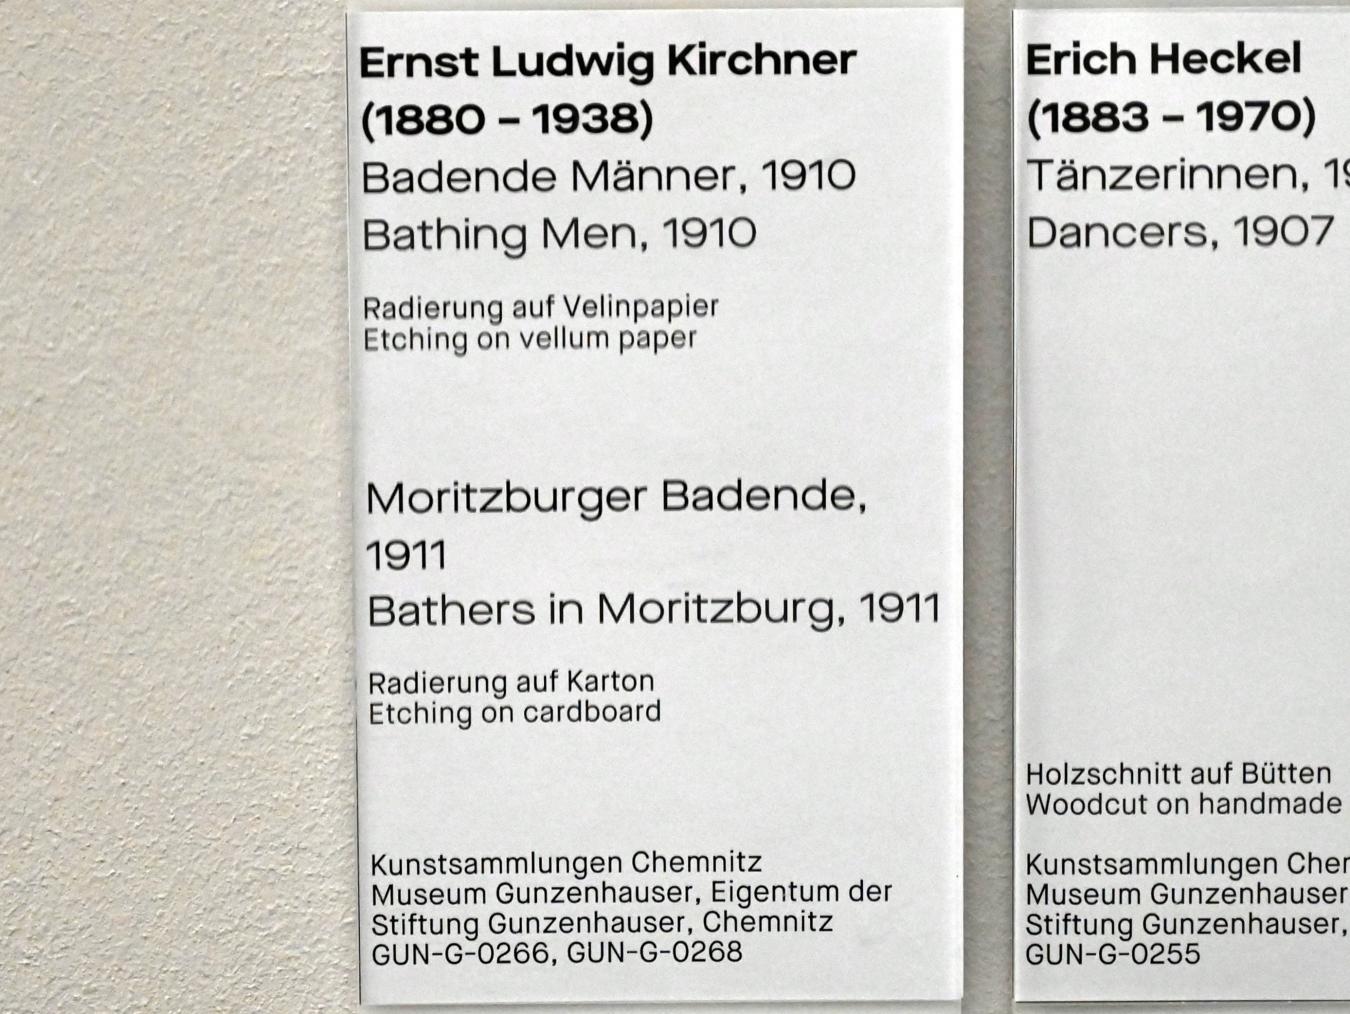 Ernst Ludwig Kirchner (1904–1933), Moritzburger Badende, Chemnitz, Museum Gunzenhauser, Saal 3.7 - Die Brücke, 1911, Bild 3/3